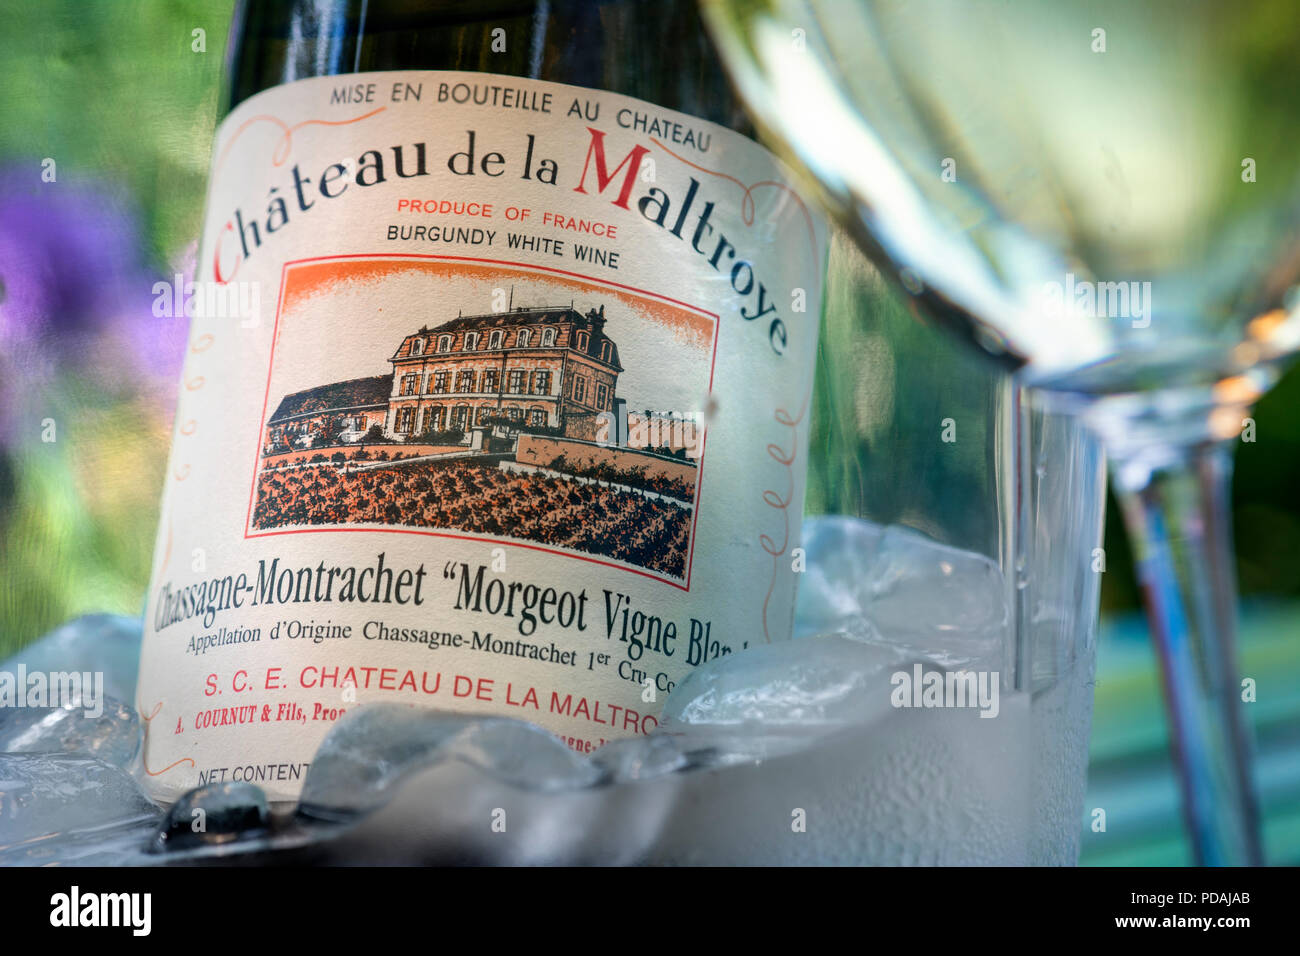 Château de la Maltroye Chassagne-Montrachet 1er cru Bourgogne blanc bouteille de vin dans un seau à glace sur la terrasse ensoleillée avec table en verre de vin France Banque D'Images